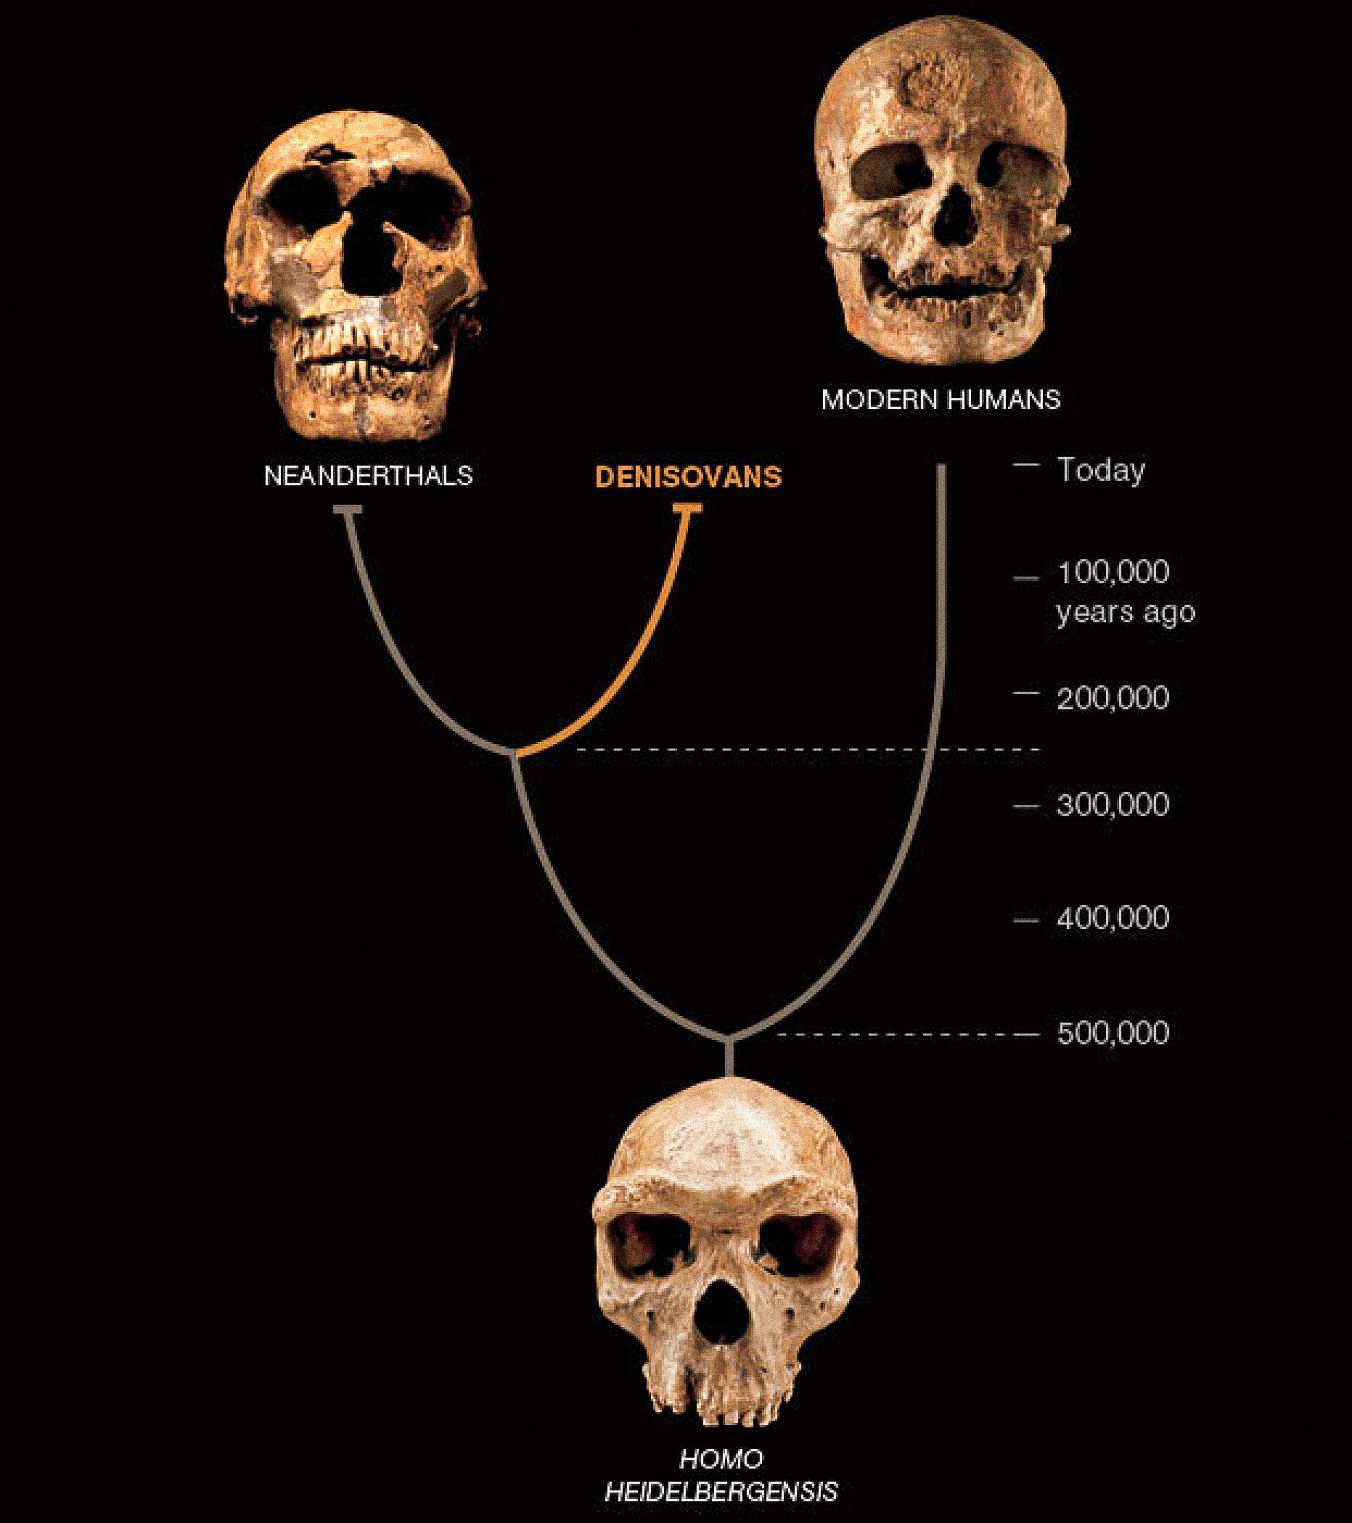 Panašu, kad Azijoje kartu su neandertaliečiais ir ankstyvaisiais šiuolaikiniais žmonėmis egzistavo trečioji žmonių rūšis, vadinama Denisovanais. Pastarieji du žinomi iš gausių fosilijų ir artefaktų. Denisovanus iki šiol apibrėžia tik vieno kaulo ir dviejų dantų DNR, tačiau tai atskleidžia naują žmogaus istorijos posūkį.